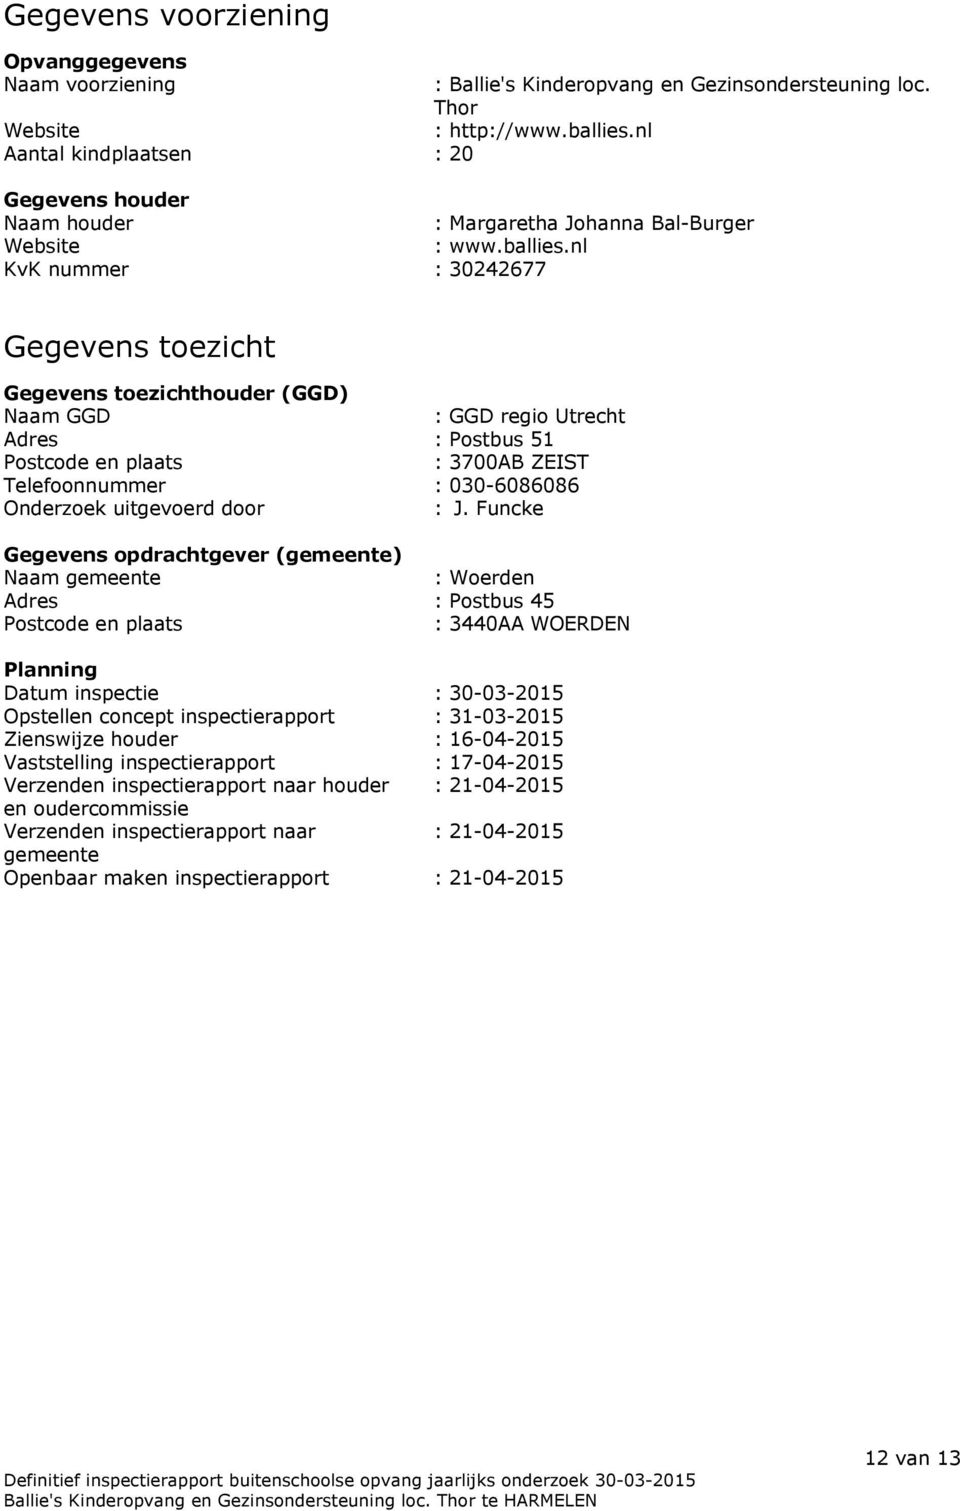 nl KvK nummer : 30242677 Gegevens toezicht Gegevens toezichthouder (GGD) Naam GGD : GGD regio Utrecht Adres : Postbus 51 Postcode en plaats : 3700AB ZEIST Telefoonnummer : 030-6086086 Onderzoek